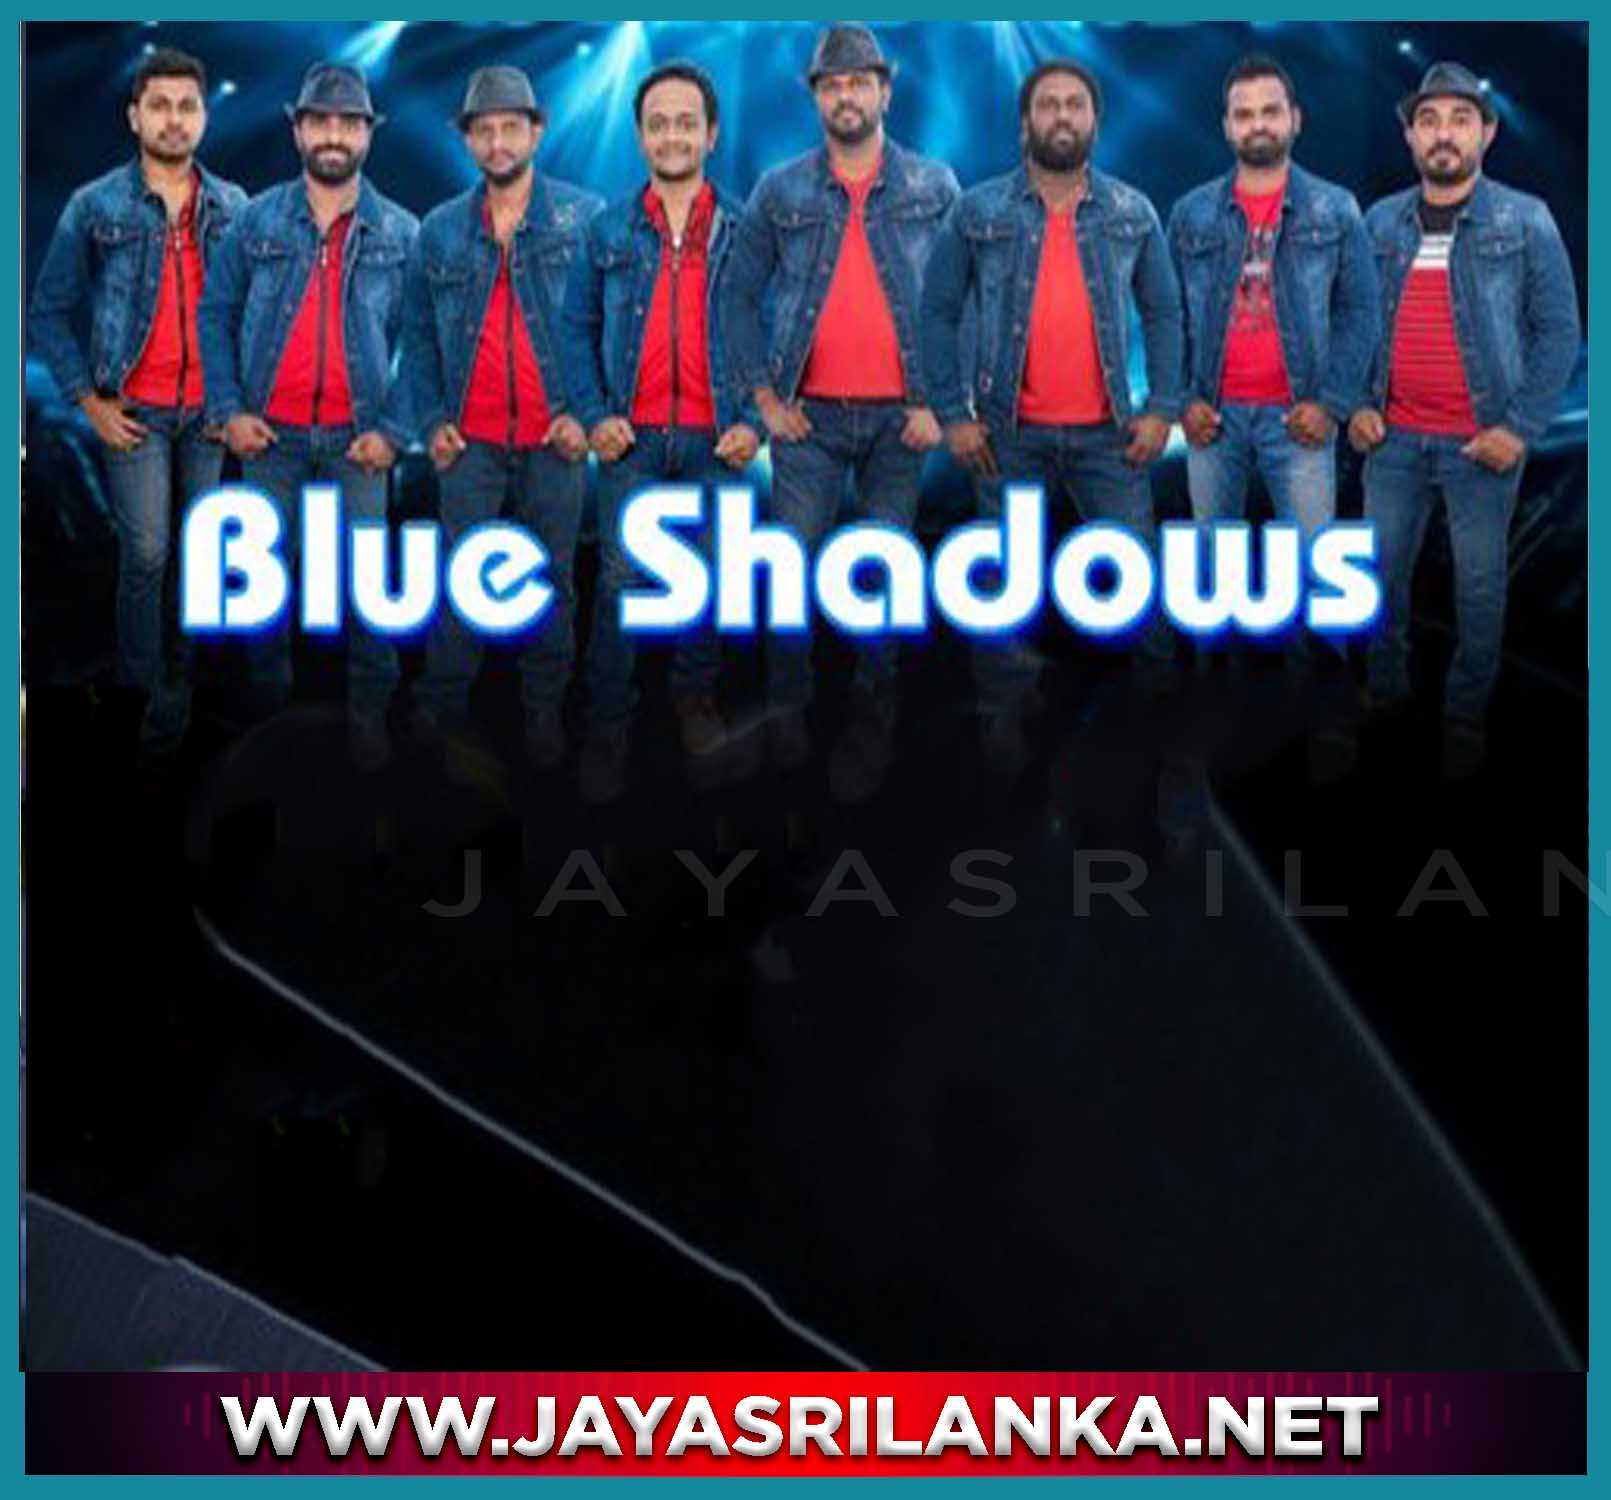 Siriyawai Siriyawai Lassana Mage Siriya - Blue Shadows mp3 Image